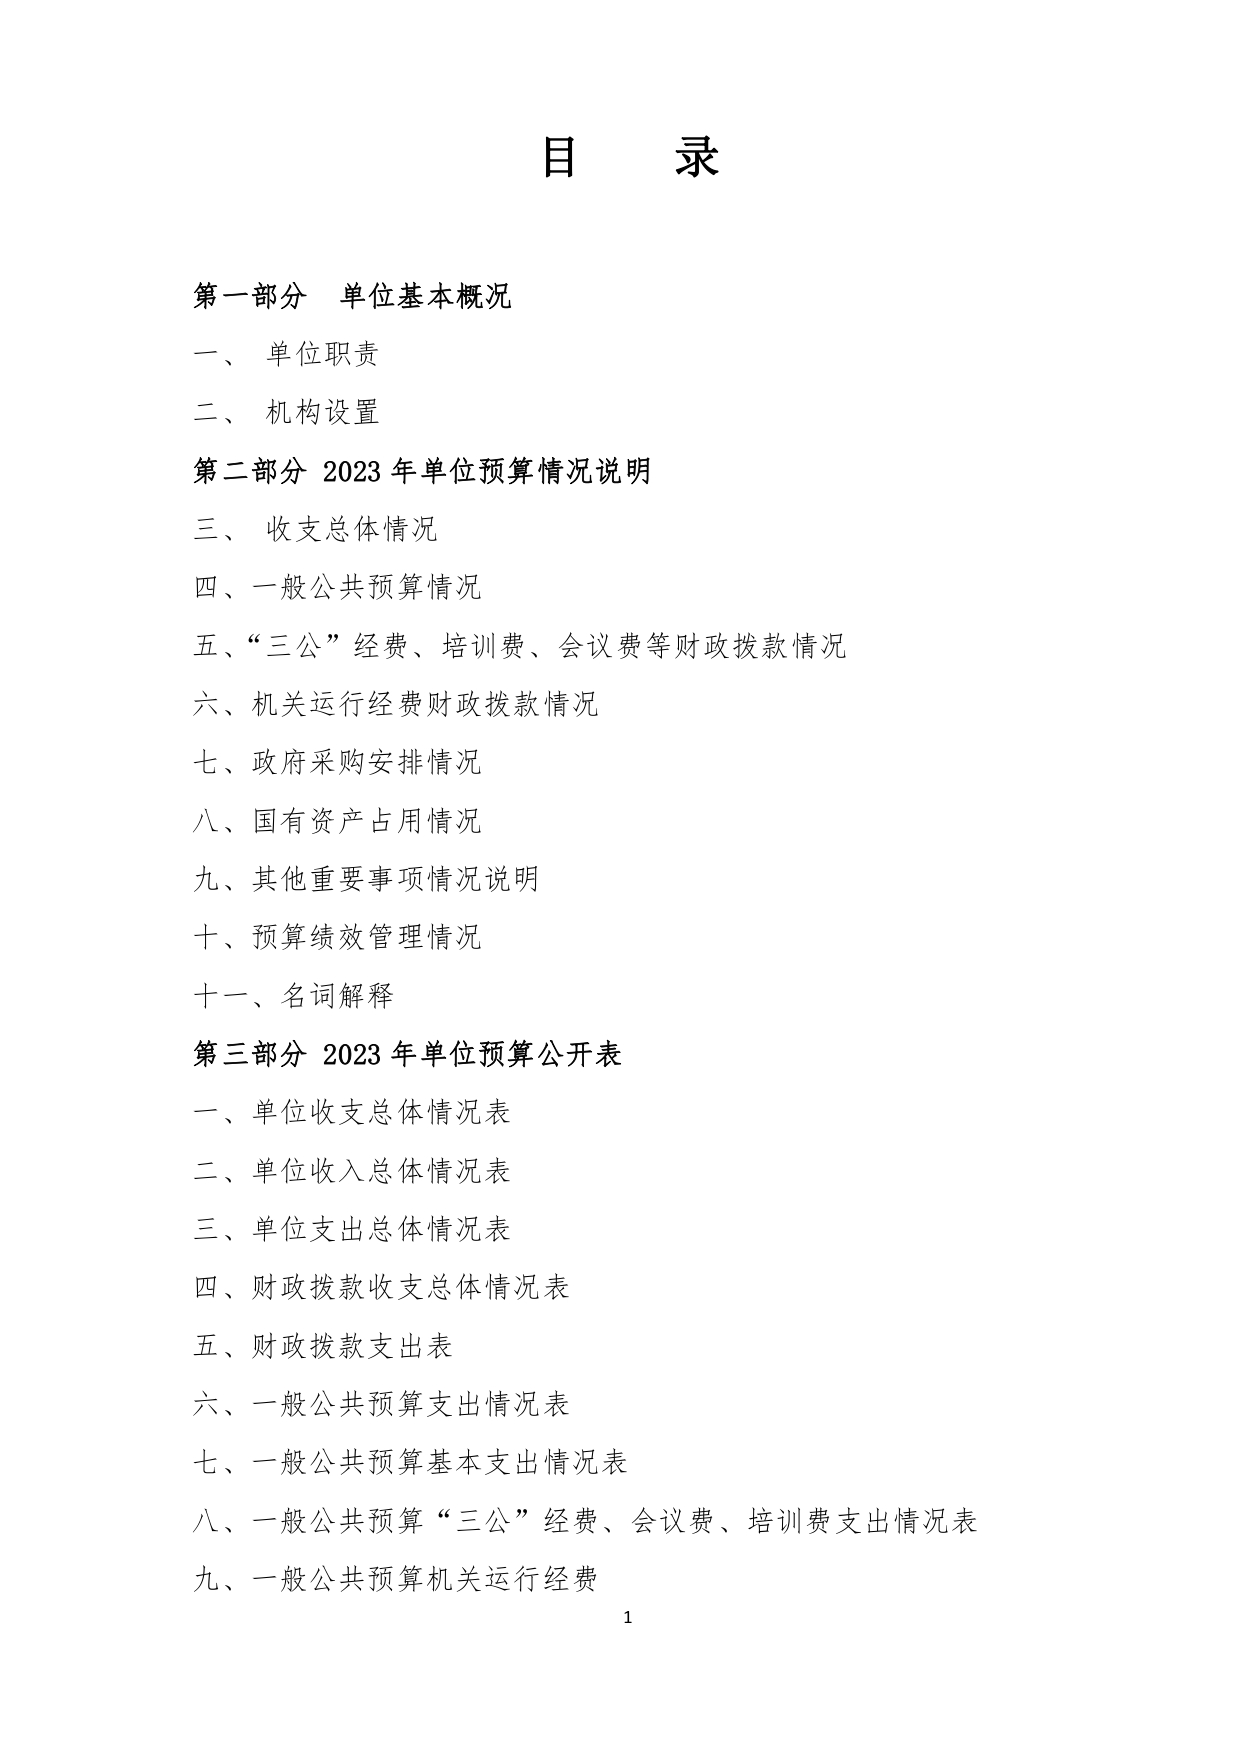 甘肃省广播电视学校2023年单位预算公开报告_page-0002.jpg